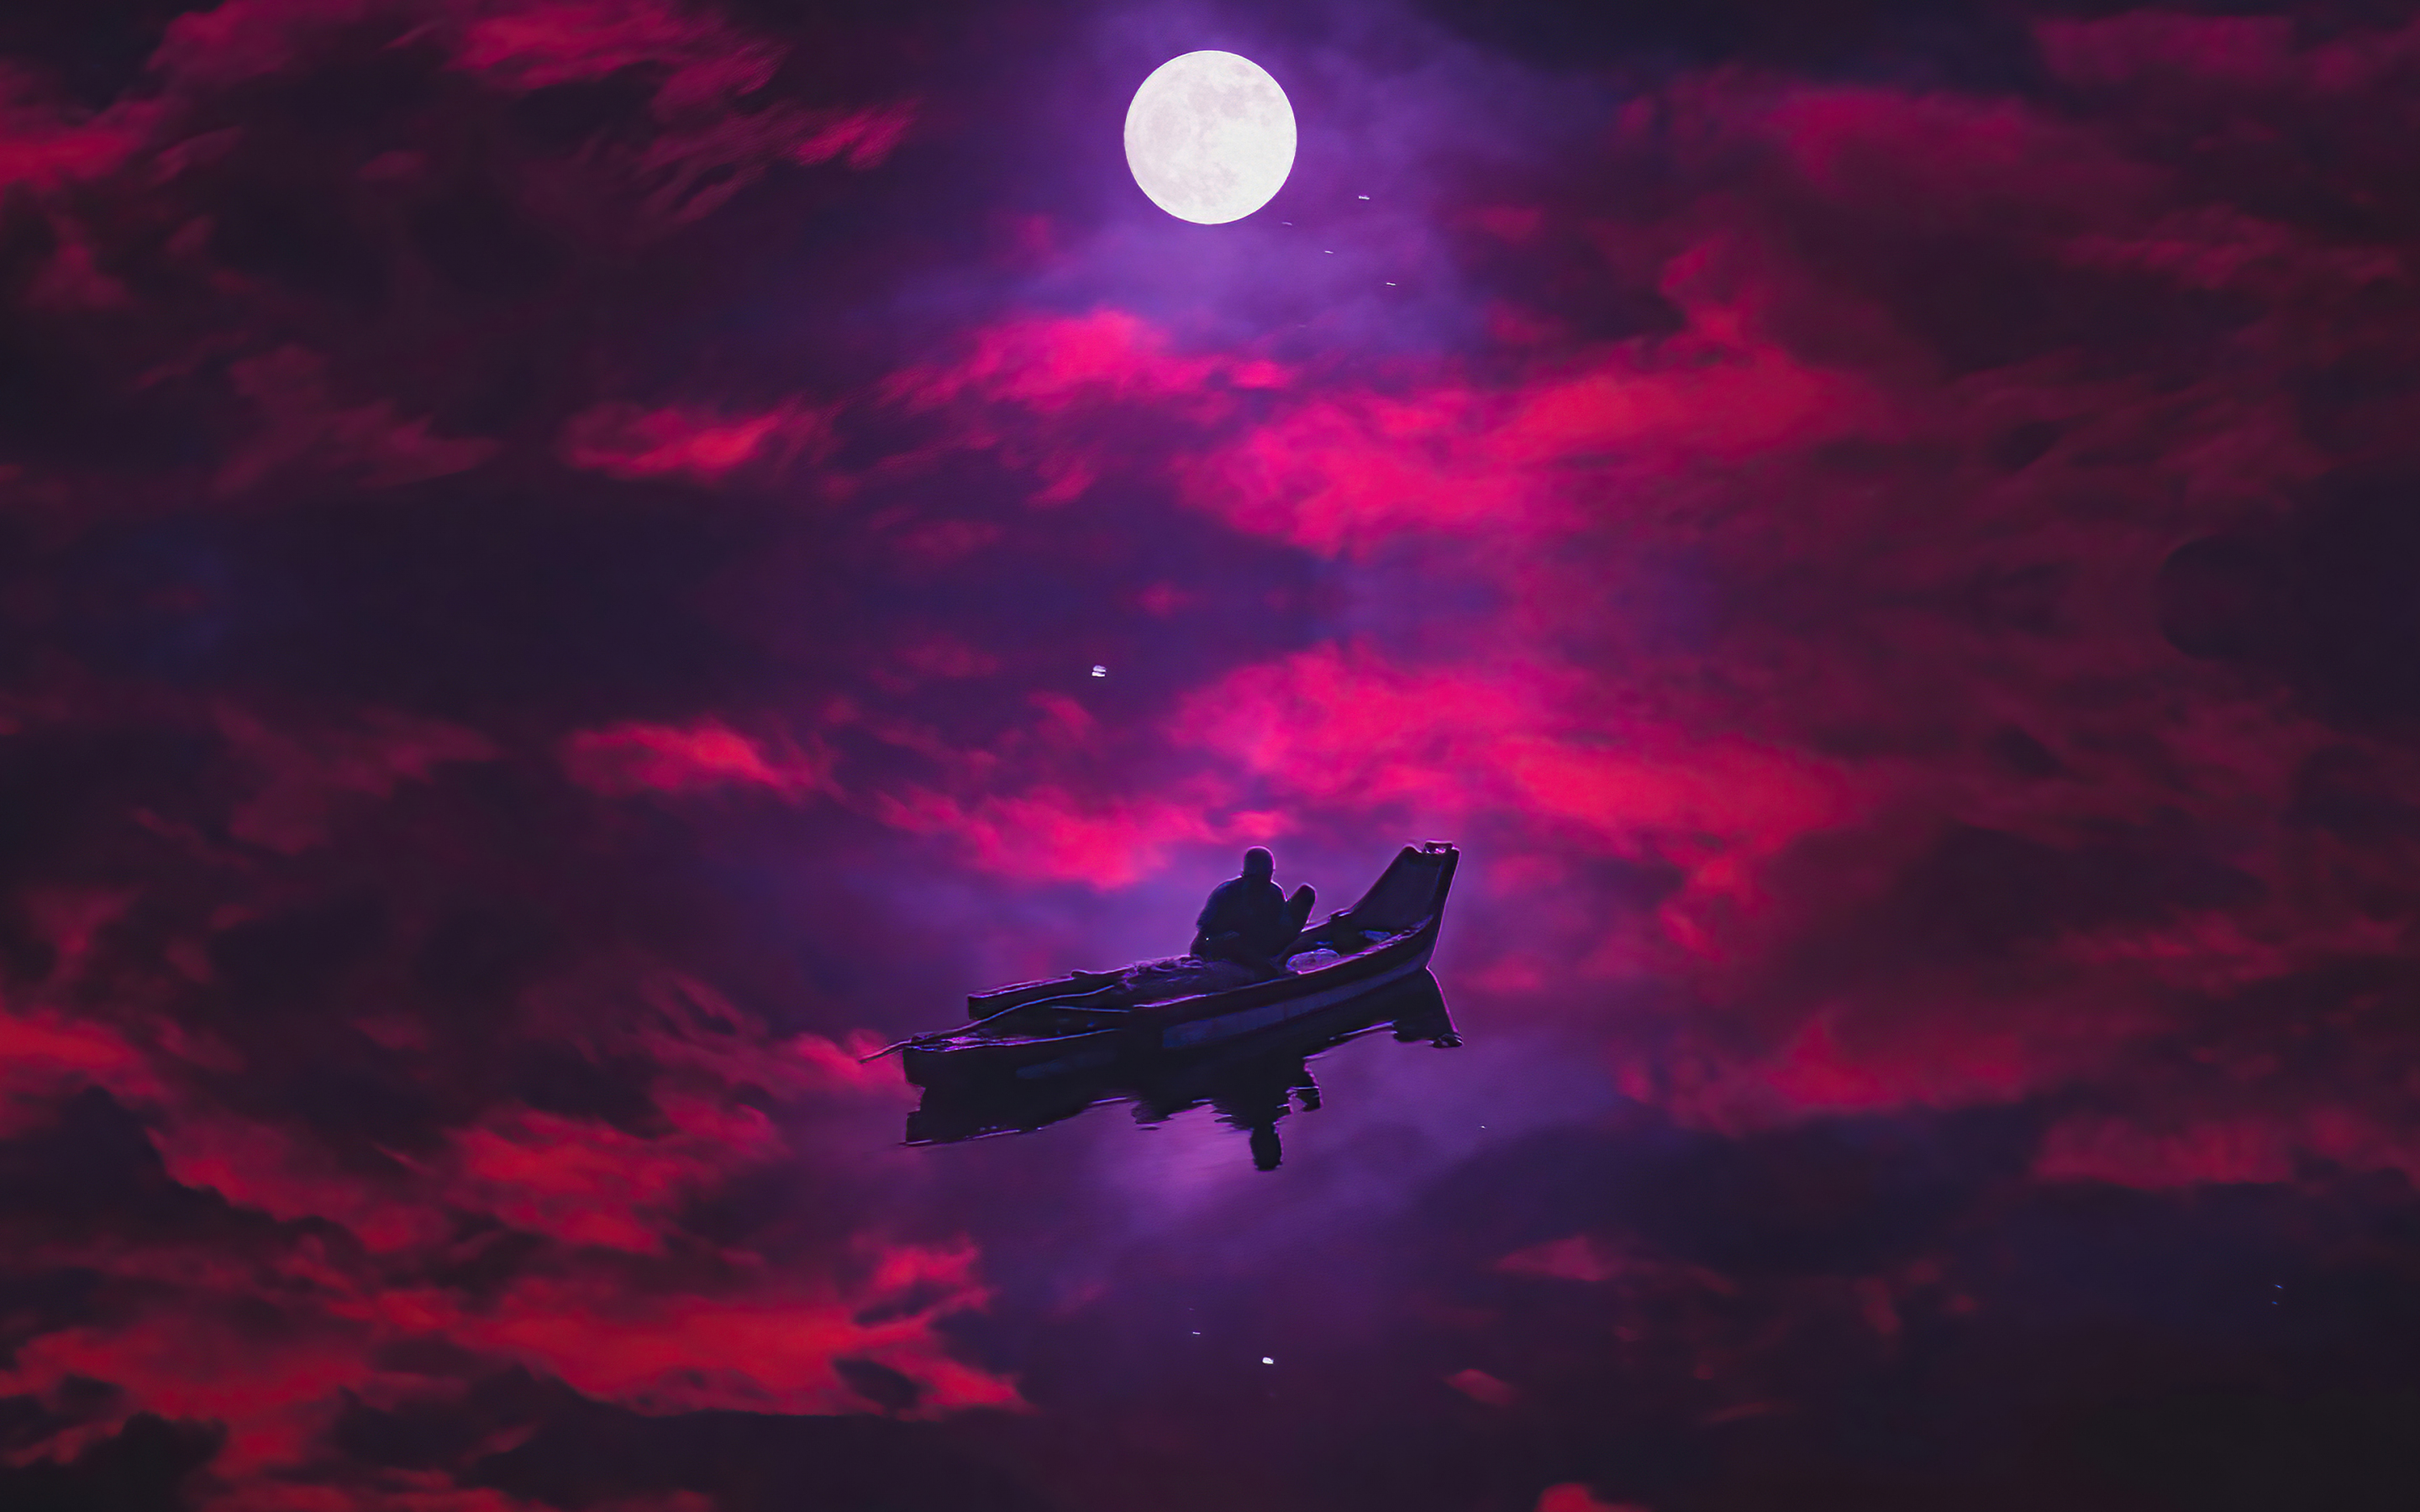 Dark evening, boating, bright moon, red sky, art, 2880x1800 wallpaper